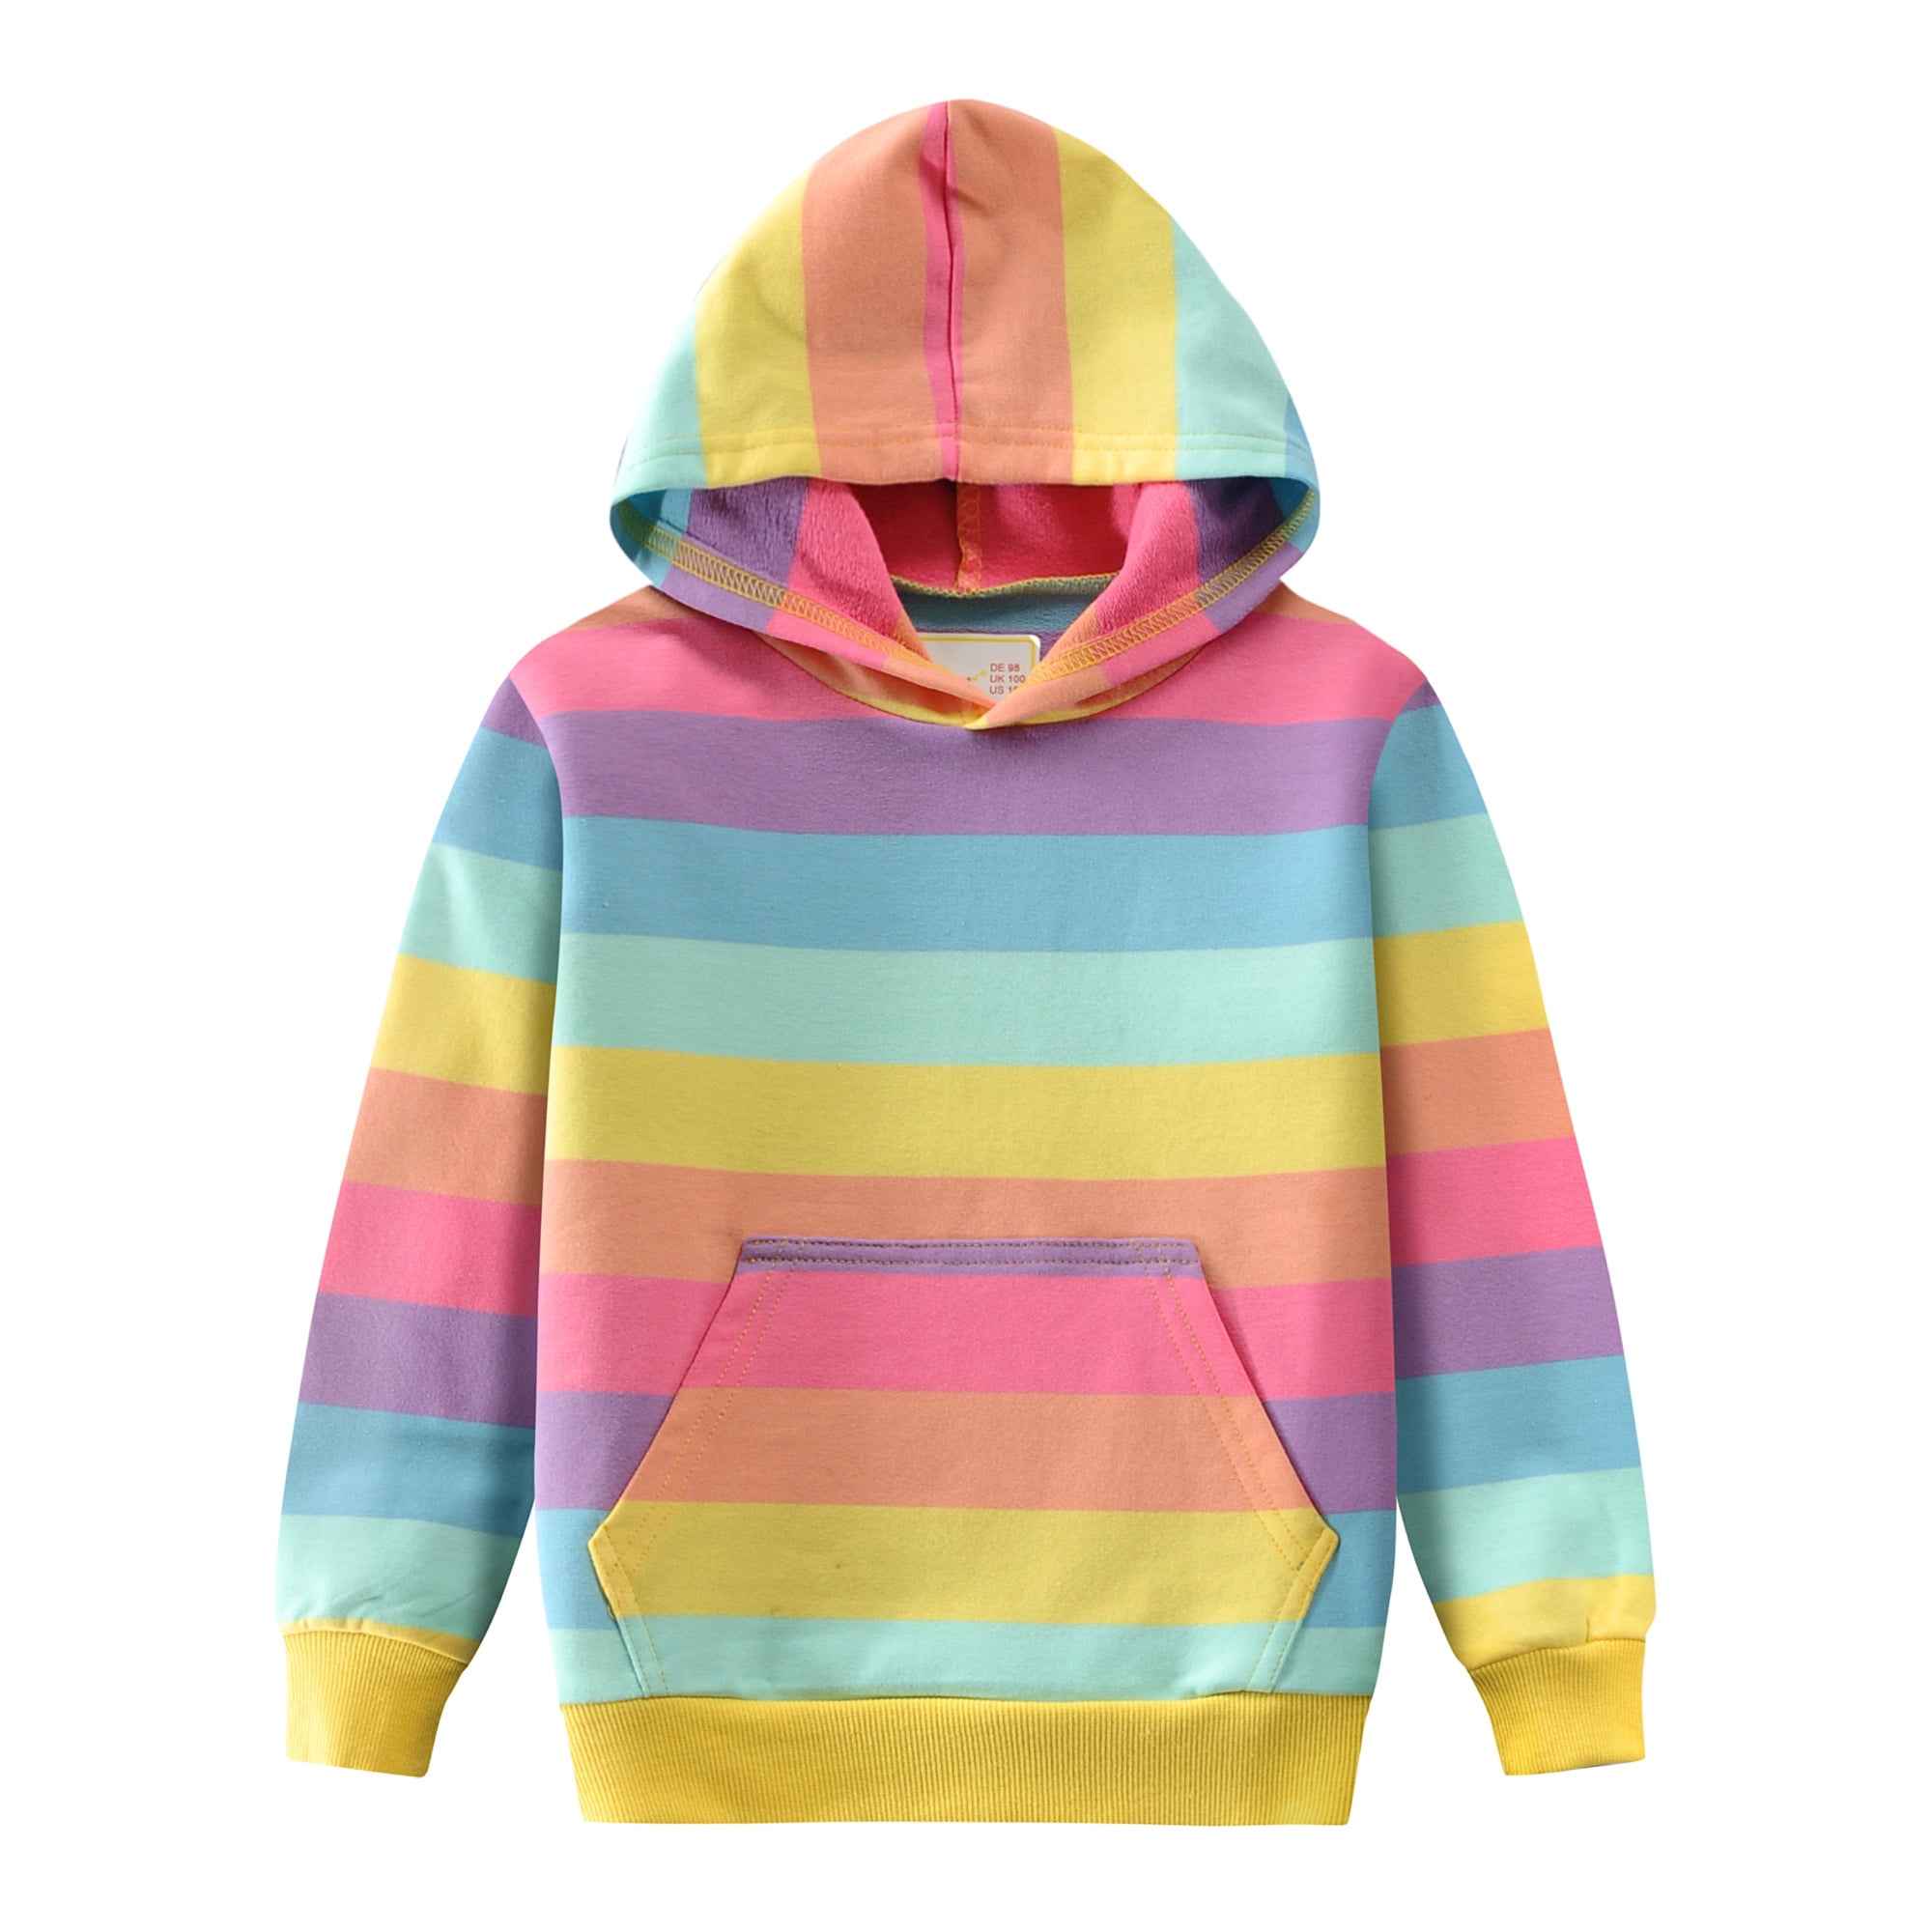 Kid Nation Kids Long Sleeve Color Block Zip Hoodie Sweater for Boys or Girls